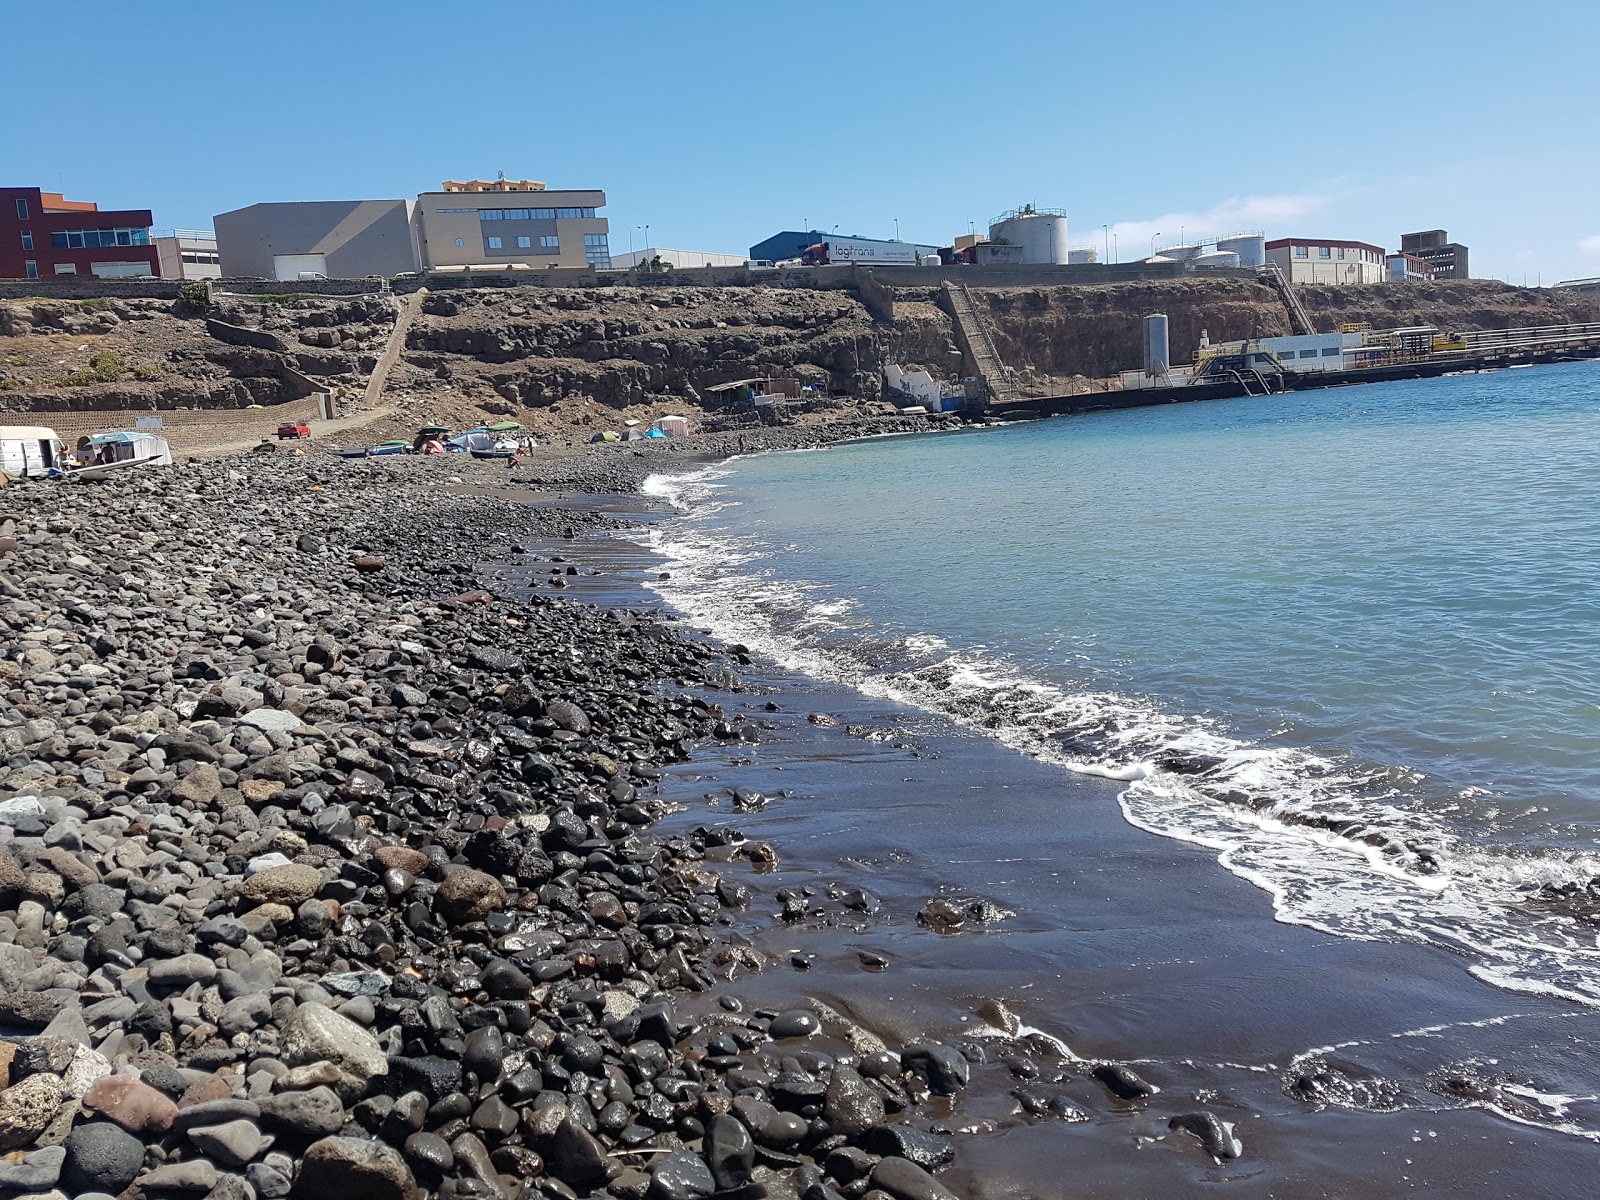 Playa de la Hullera'in fotoğrafı gri kum ve çakıl yüzey ile